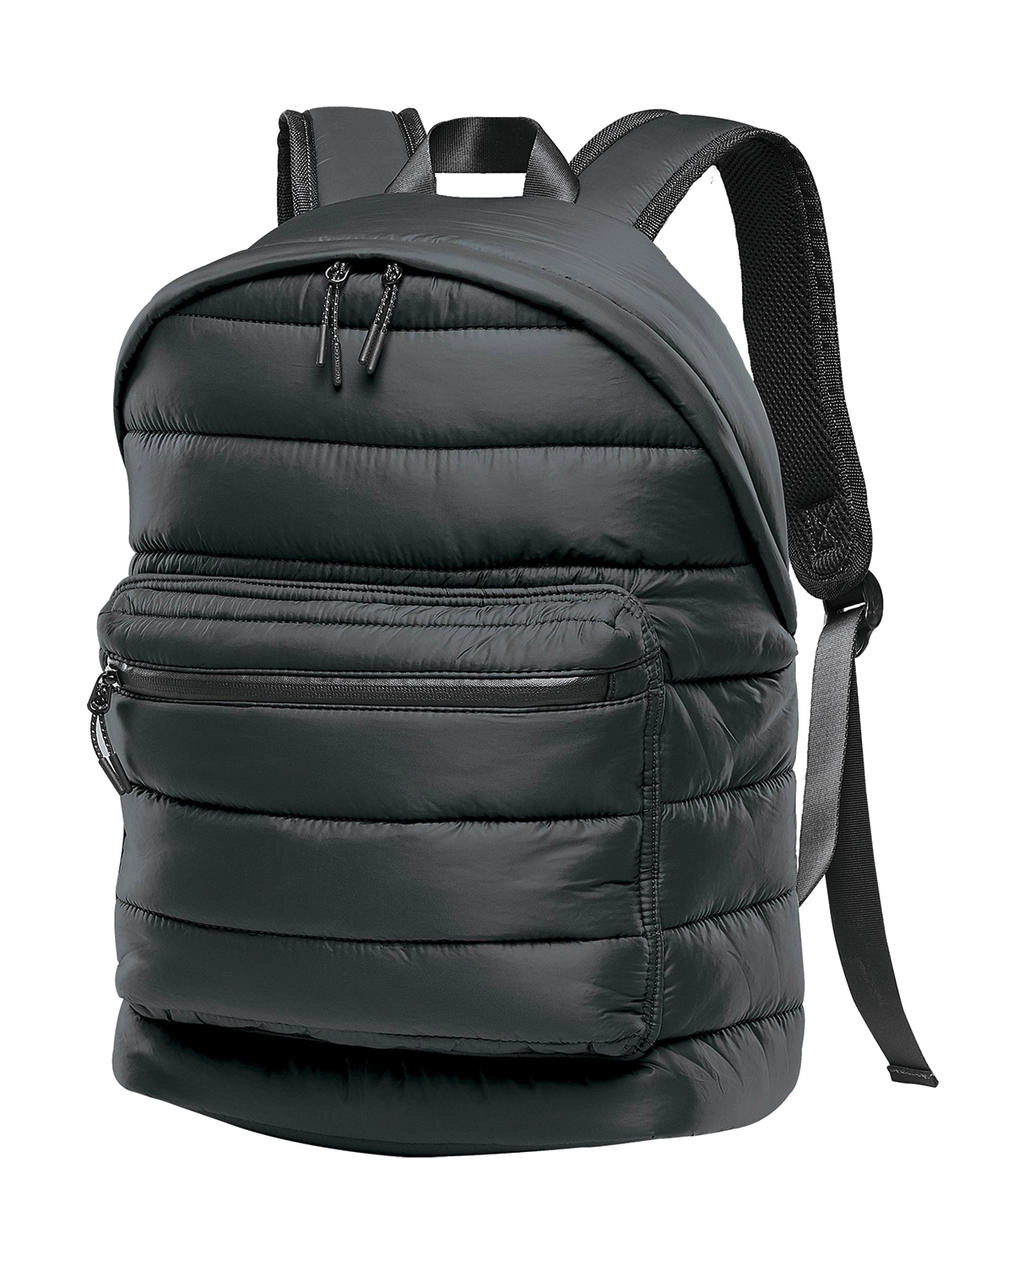 Stavanger Quilted Backpack zum Besticken und Bedrucken in der Farbe Black mit Ihren Logo, Schriftzug oder Motiv.